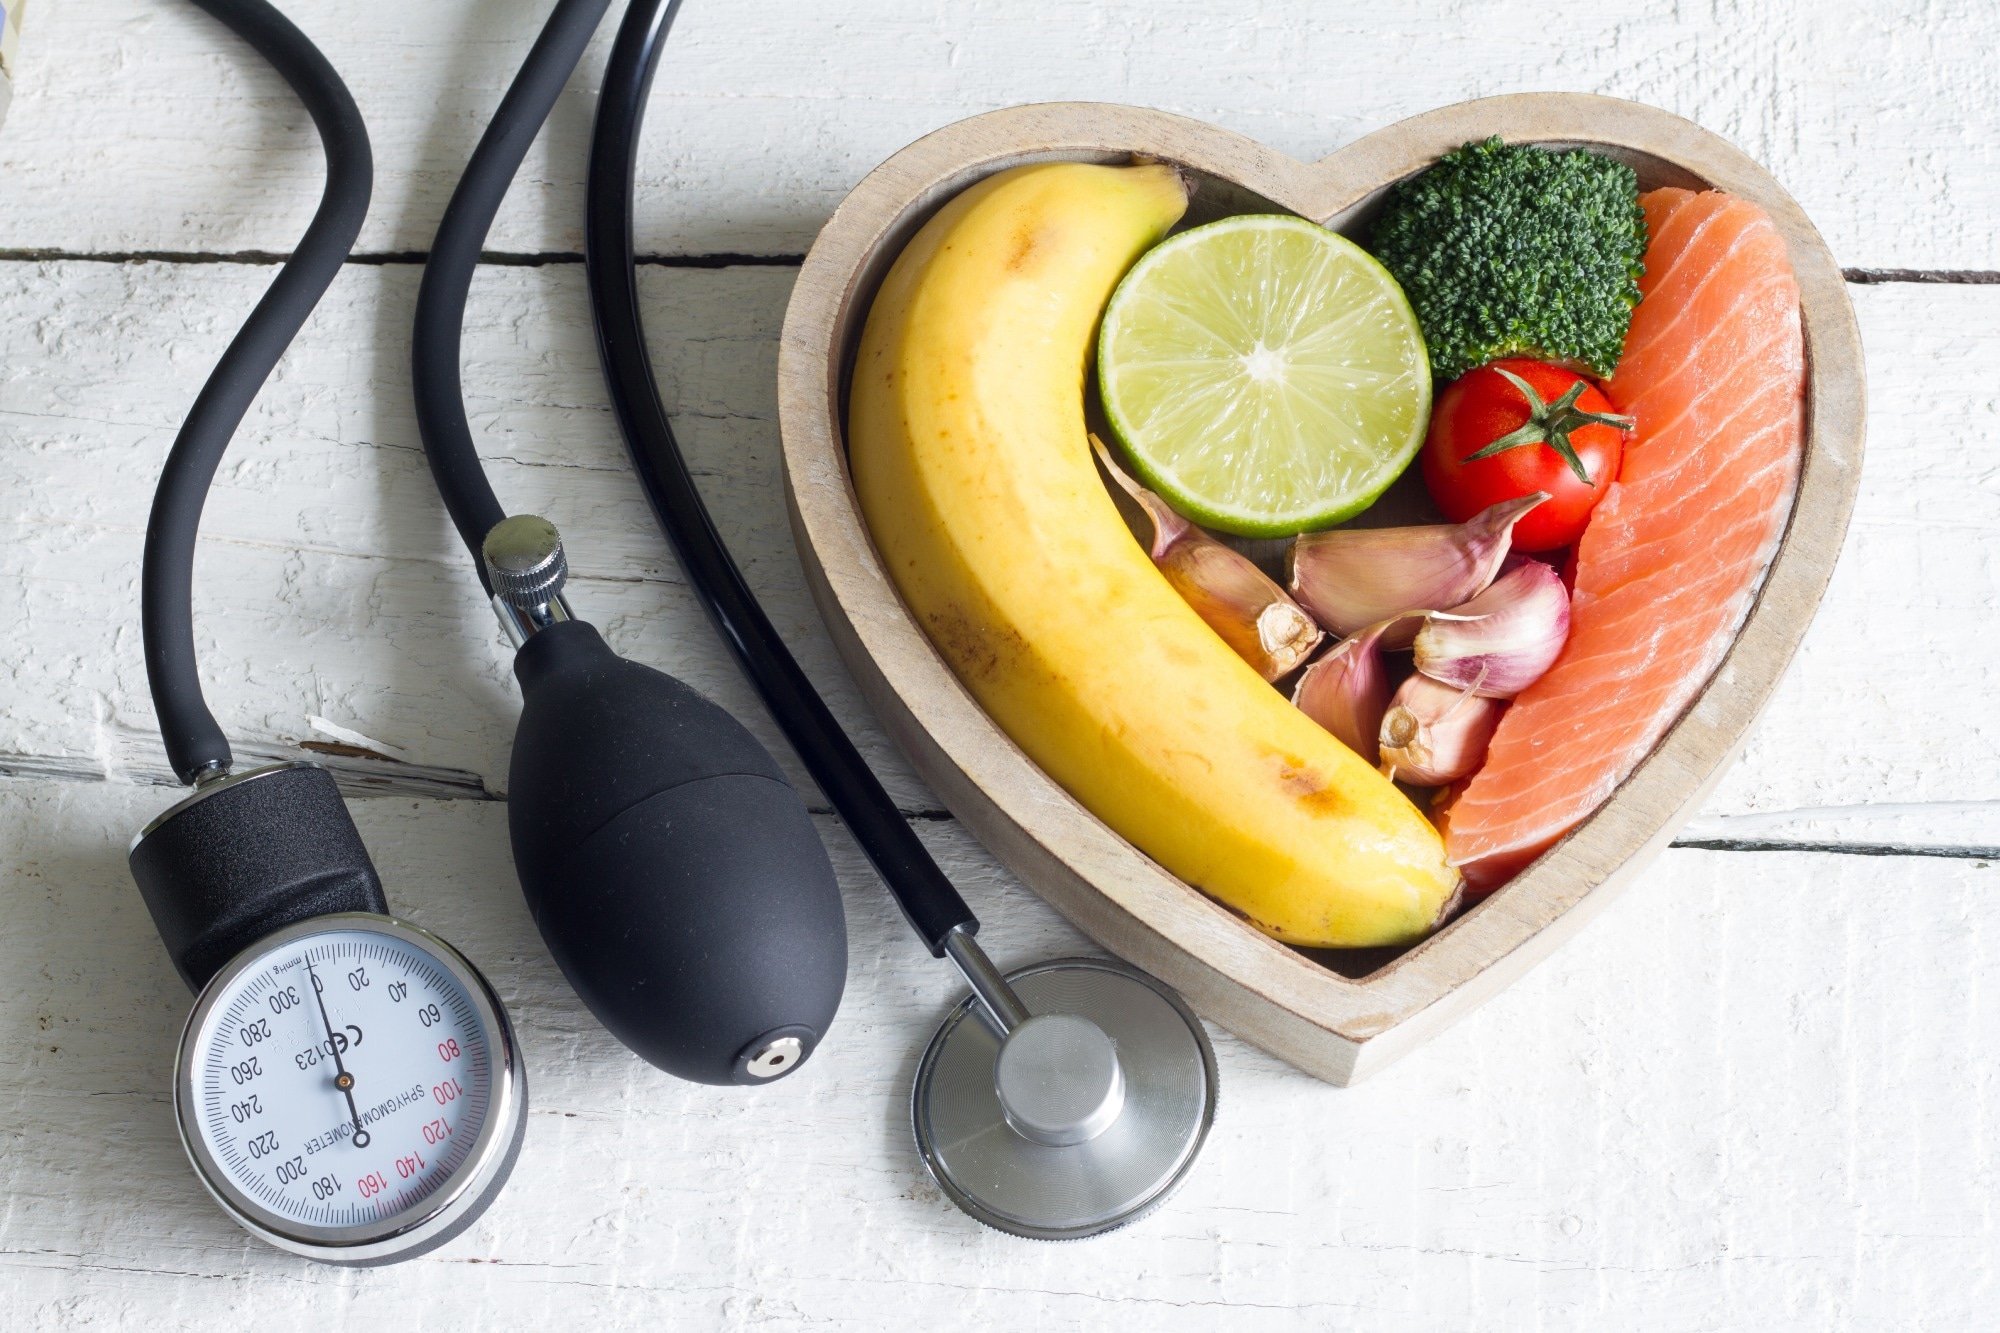 Revisión: El papel de la dieta en la prevención de la hipertensión y el control de la presión arterial: una revisión general de metanálisis de estudios intervencionistas y observacionales.  Haber de imagen: udra11/Shutterstock